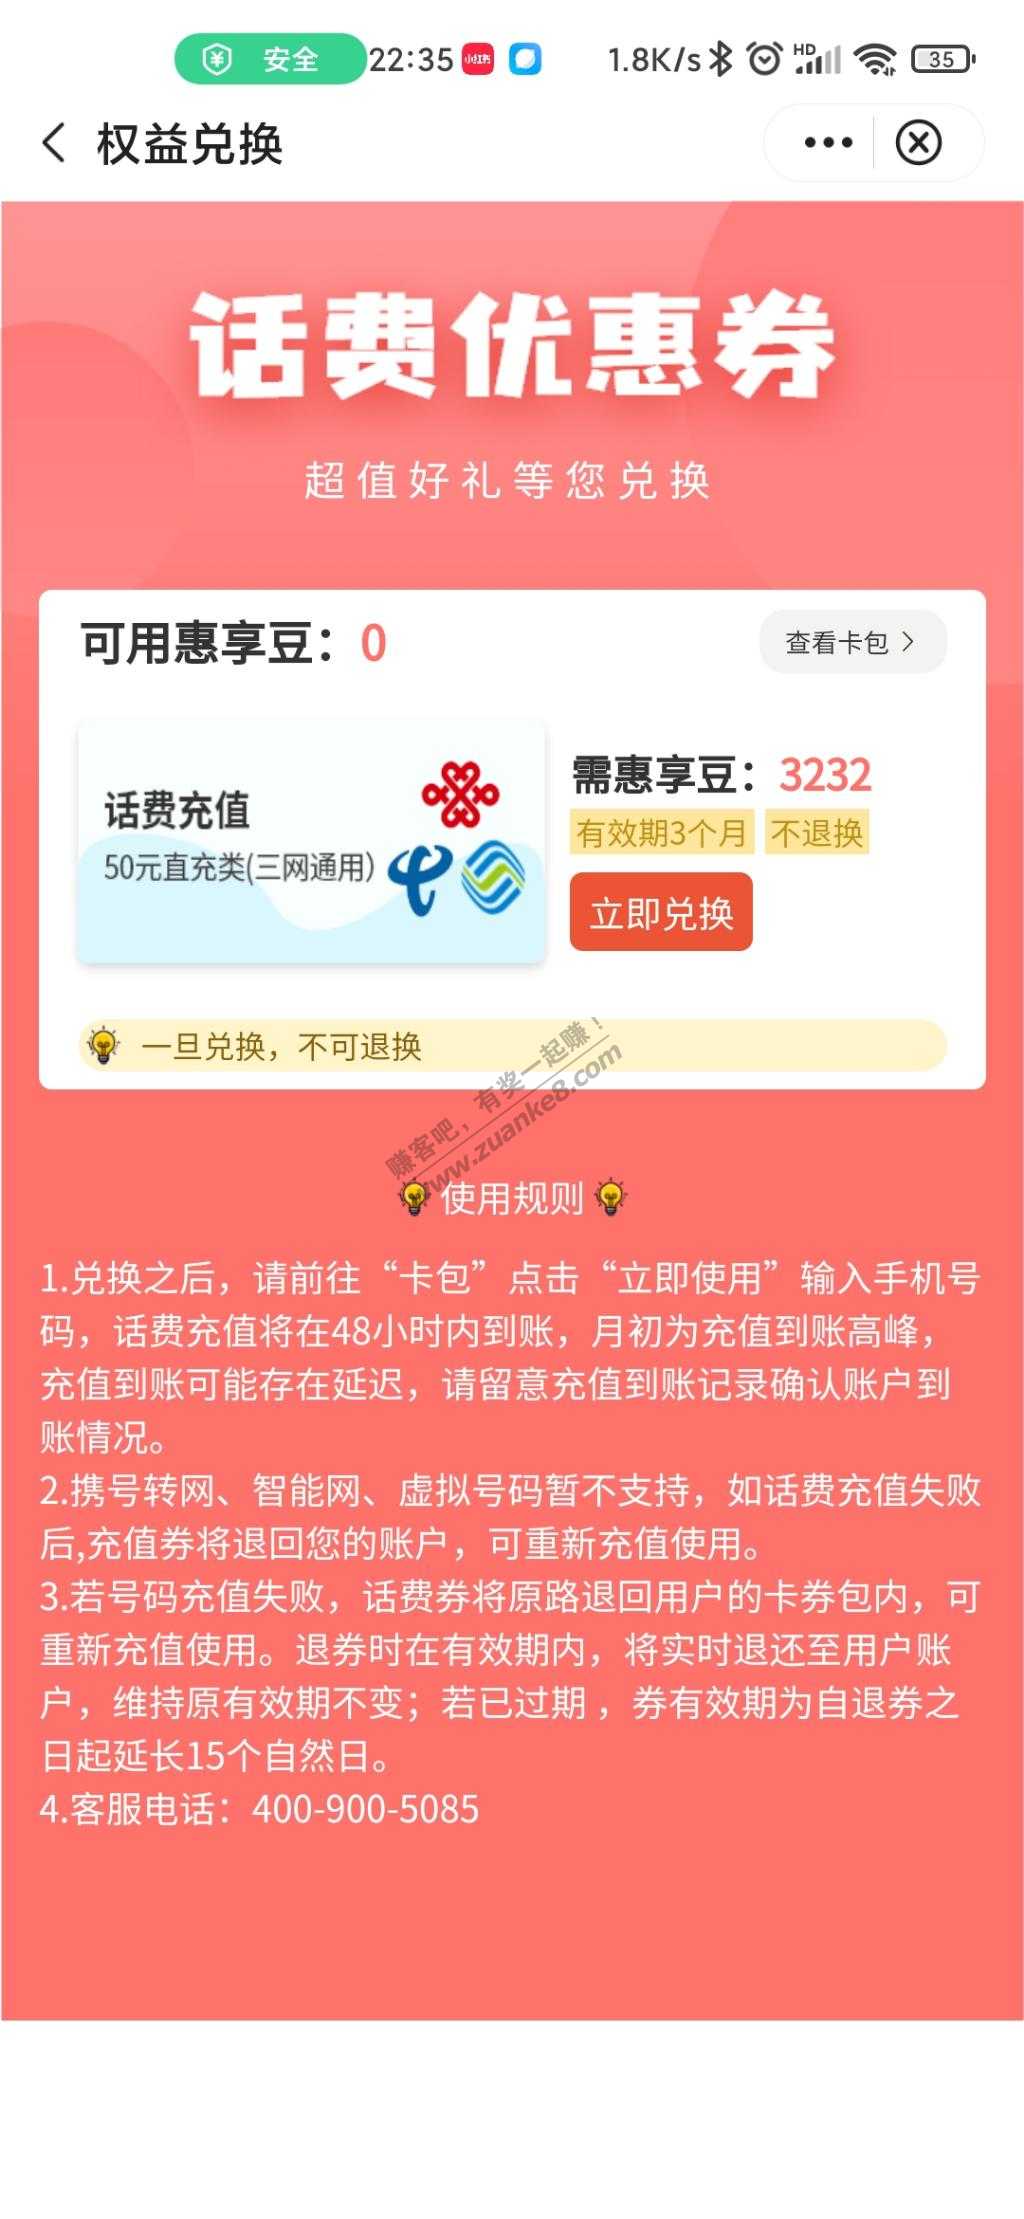 中国银行50话费-惠小助(52huixz.com)